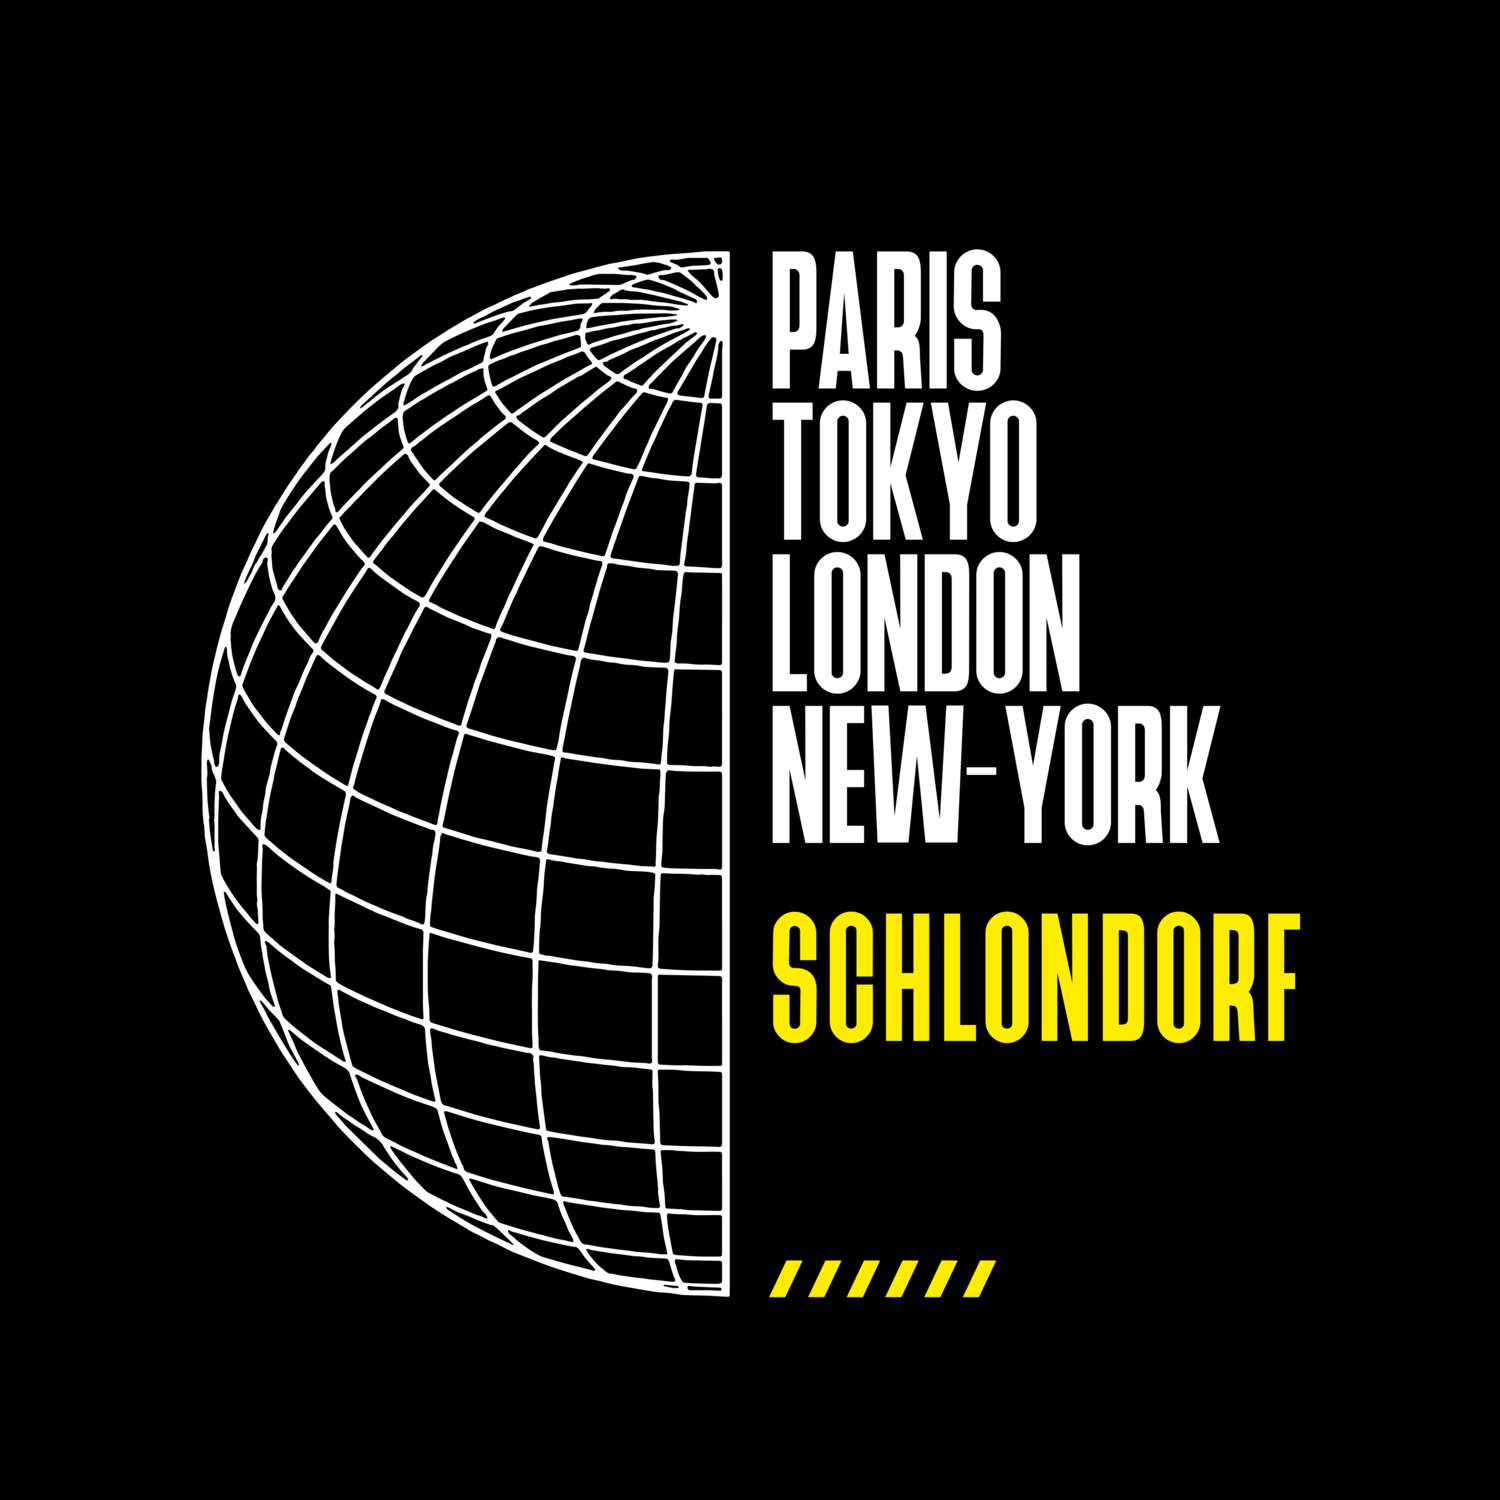 Schlondorf T-Shirt »Paris Tokyo London«